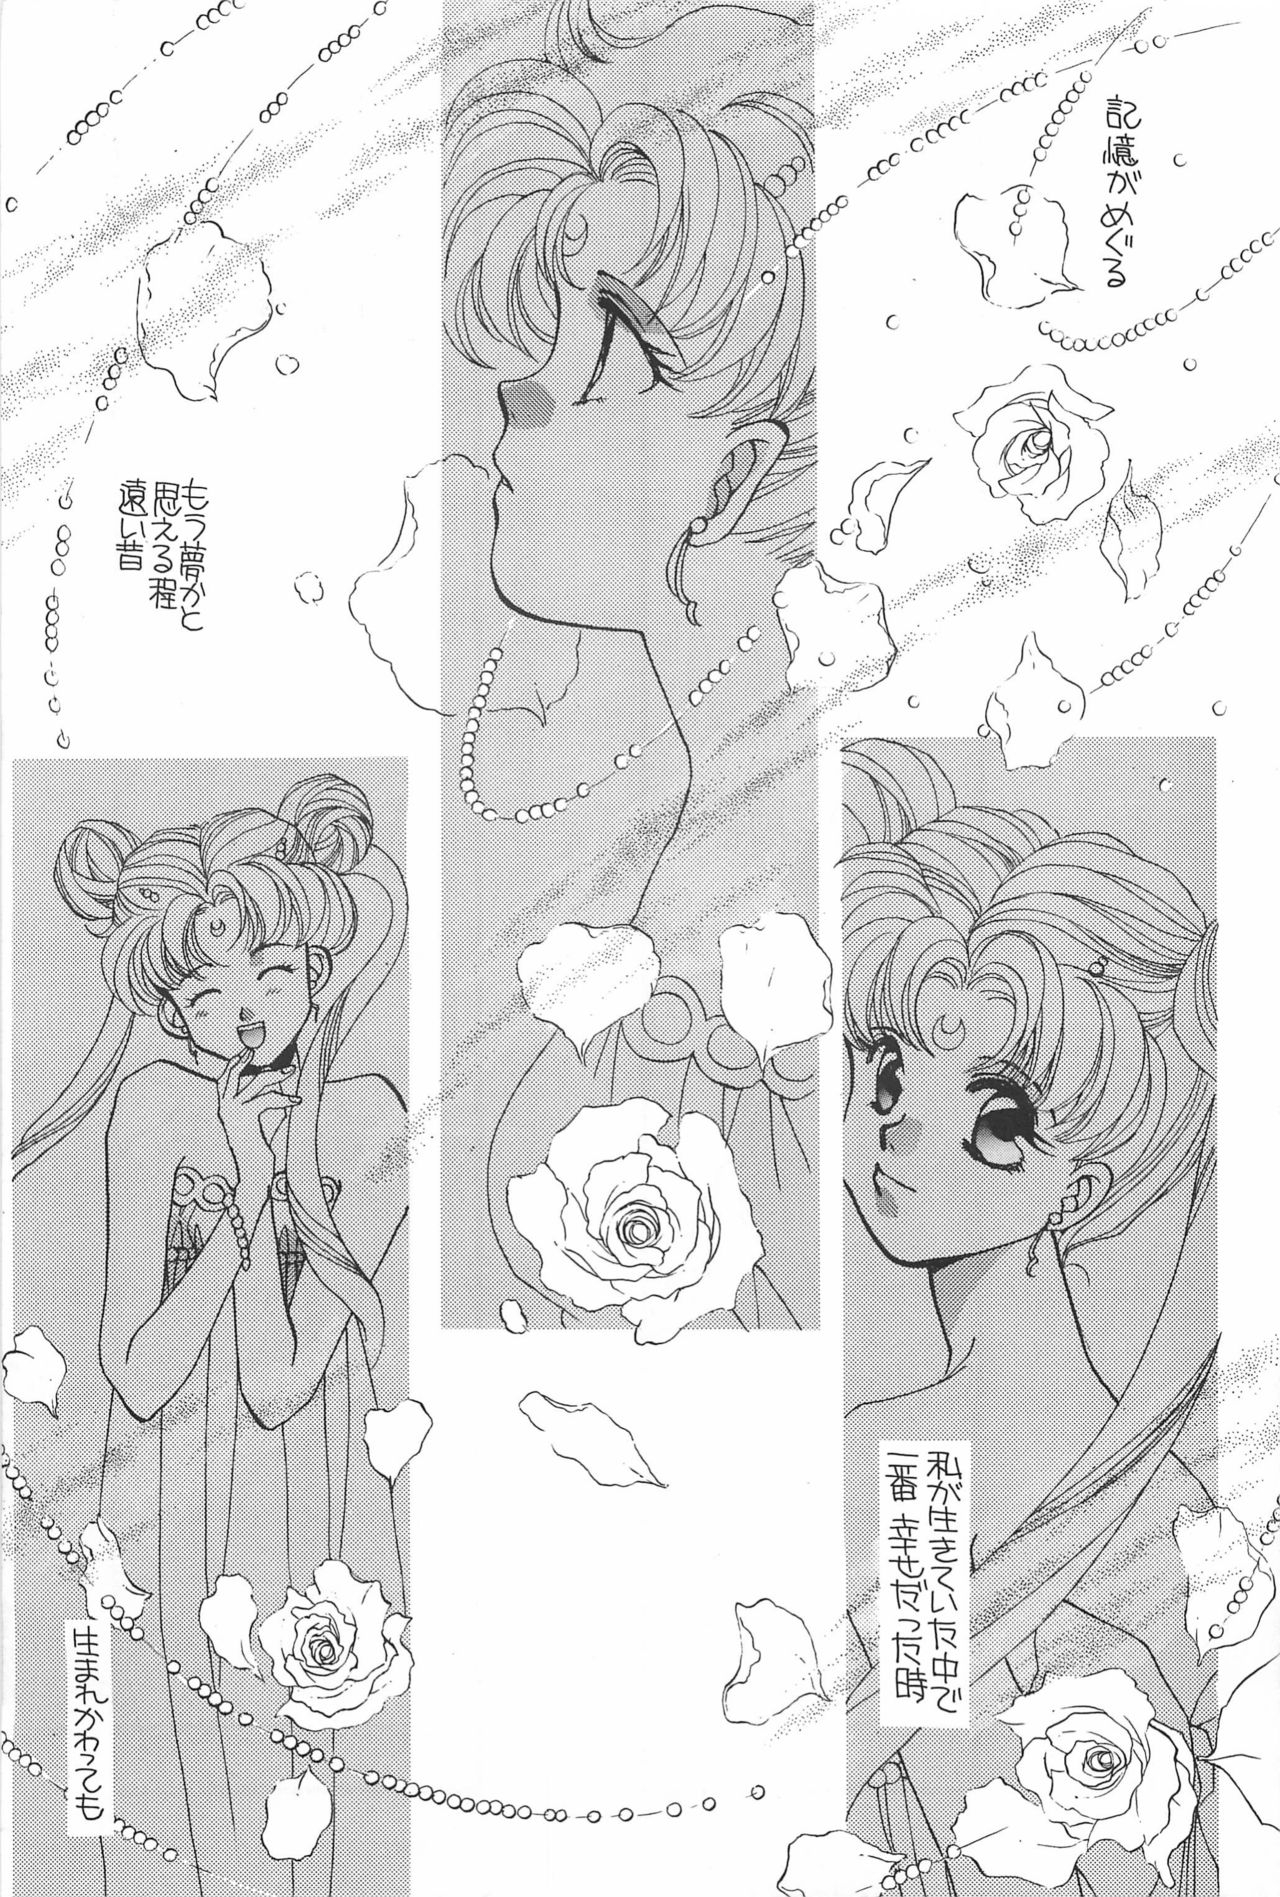 [Hello World (Muttri Moony)] Kaze no You ni Yume no You ni - Sailor Moon Collection (Sailor Moon) 88